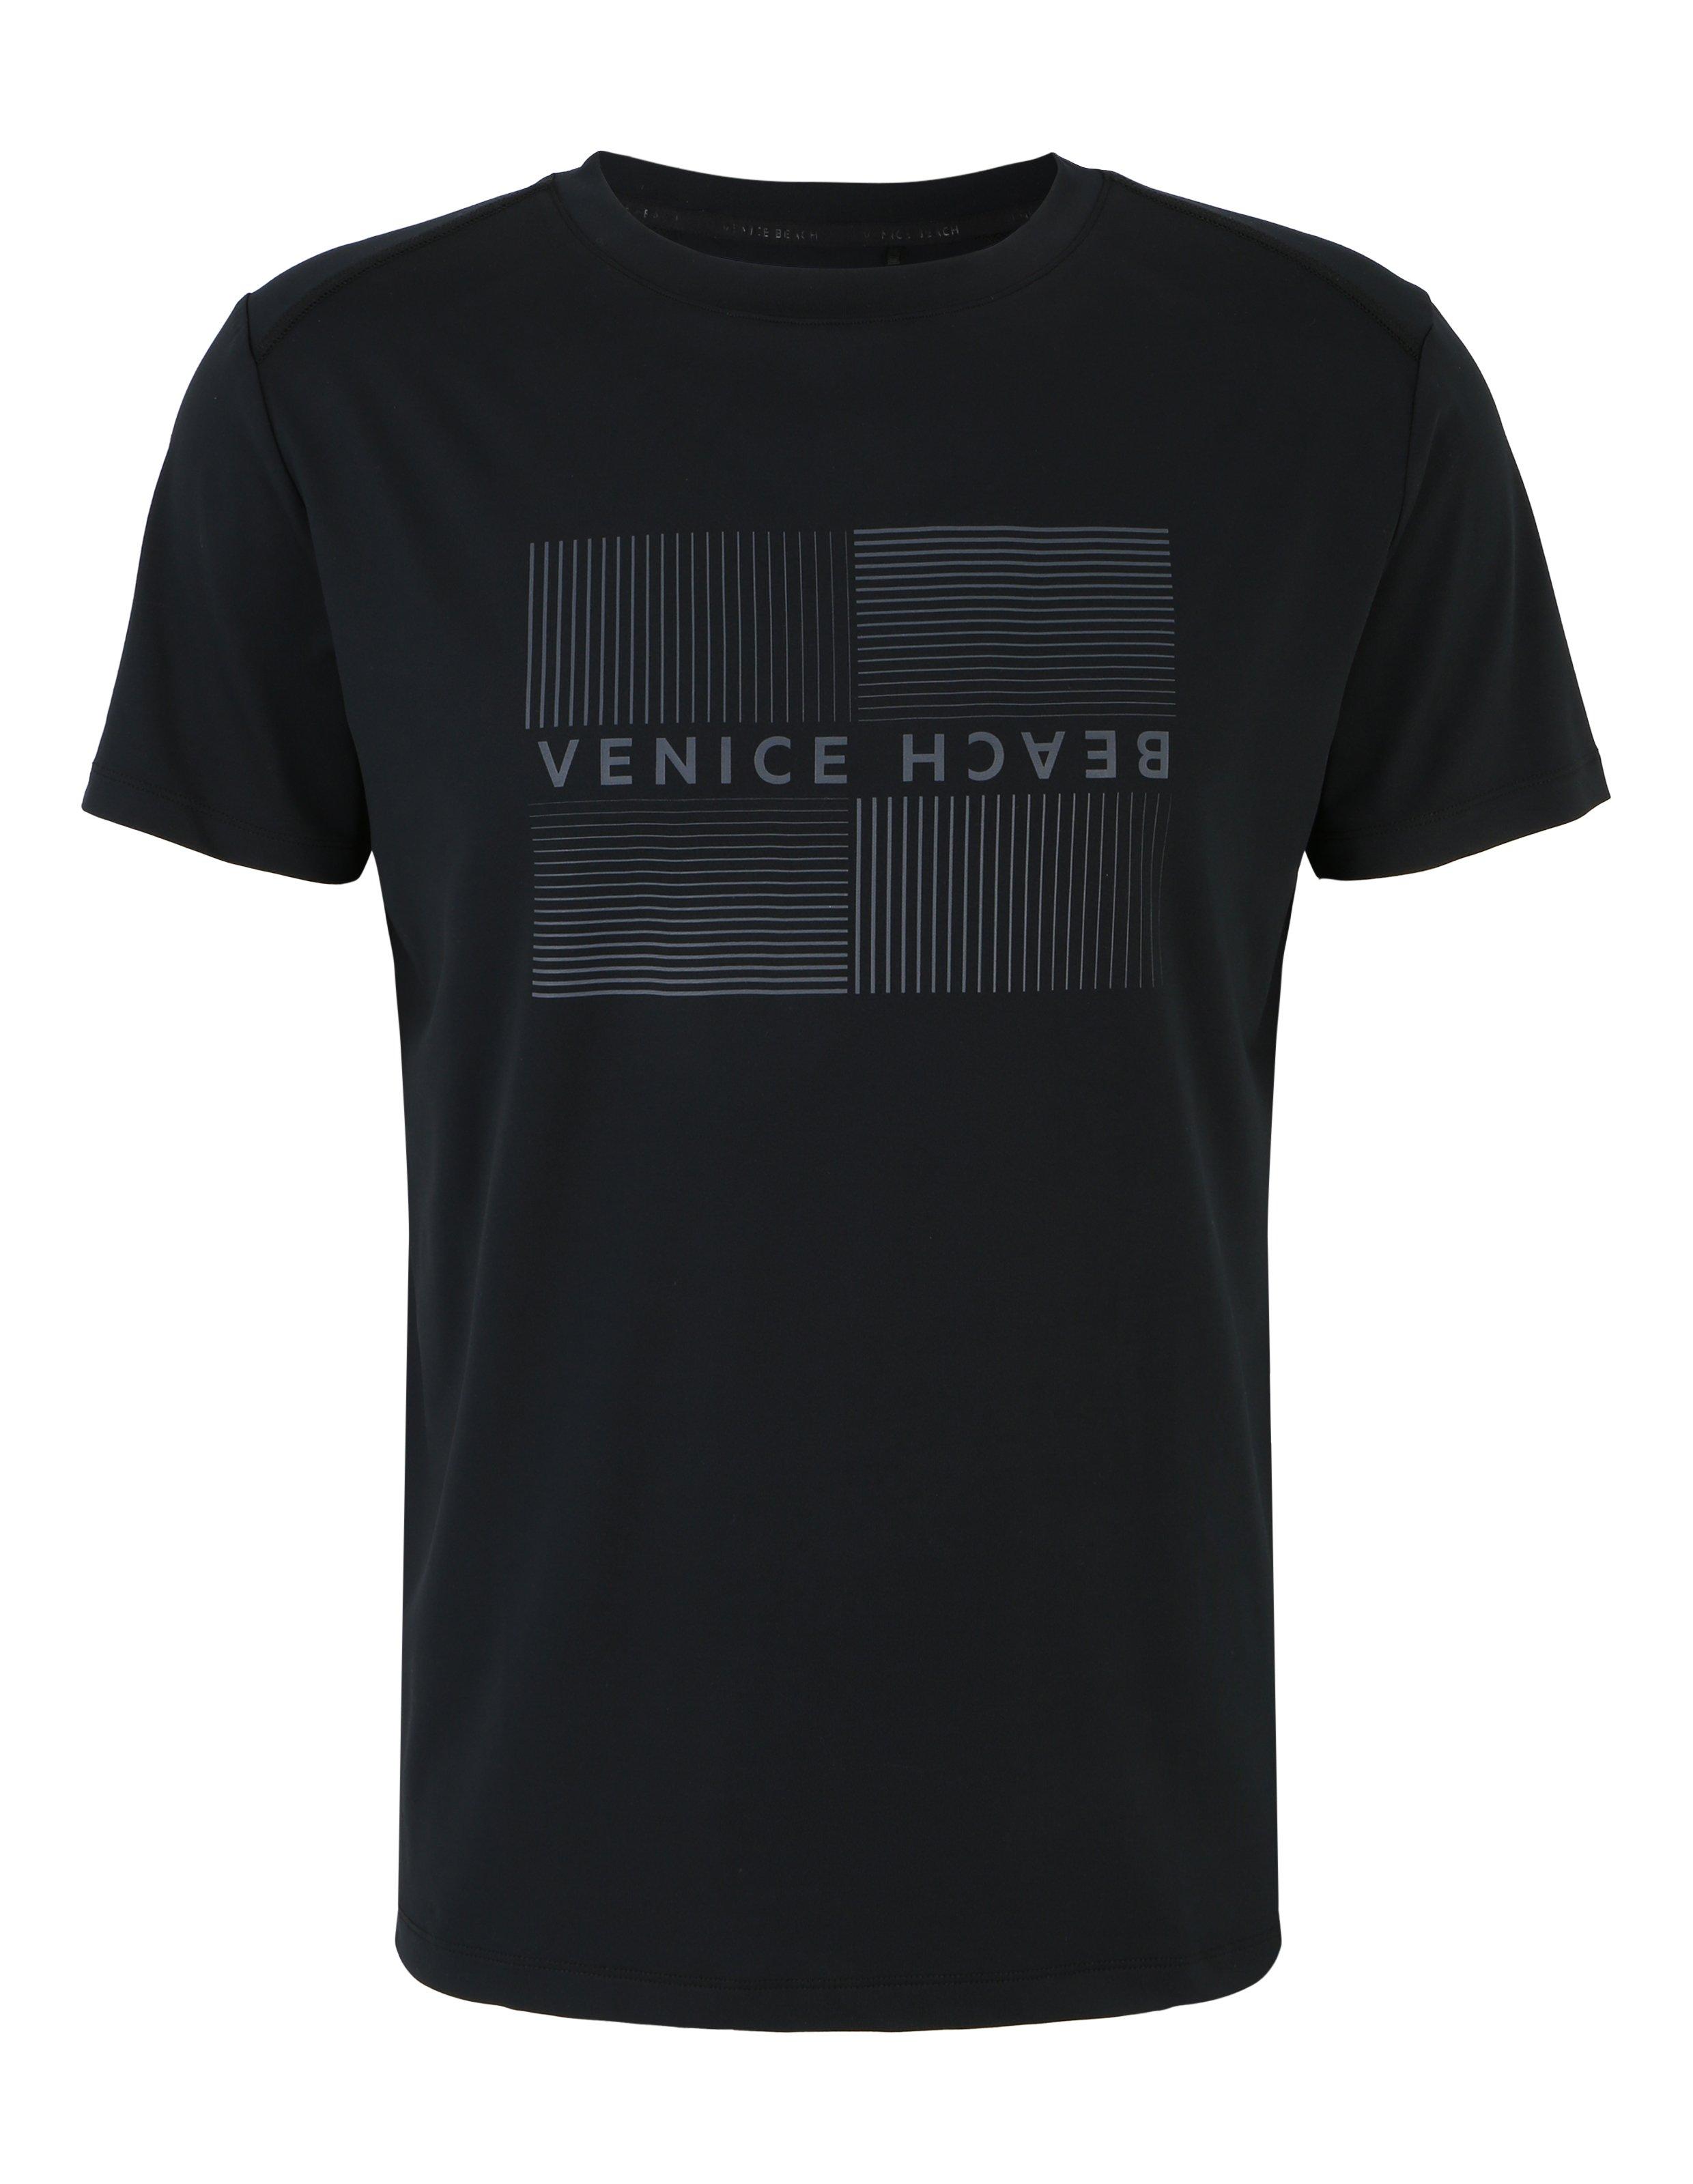 Спортивная рубашка для спортзала или отдыха Venice Beach, черный